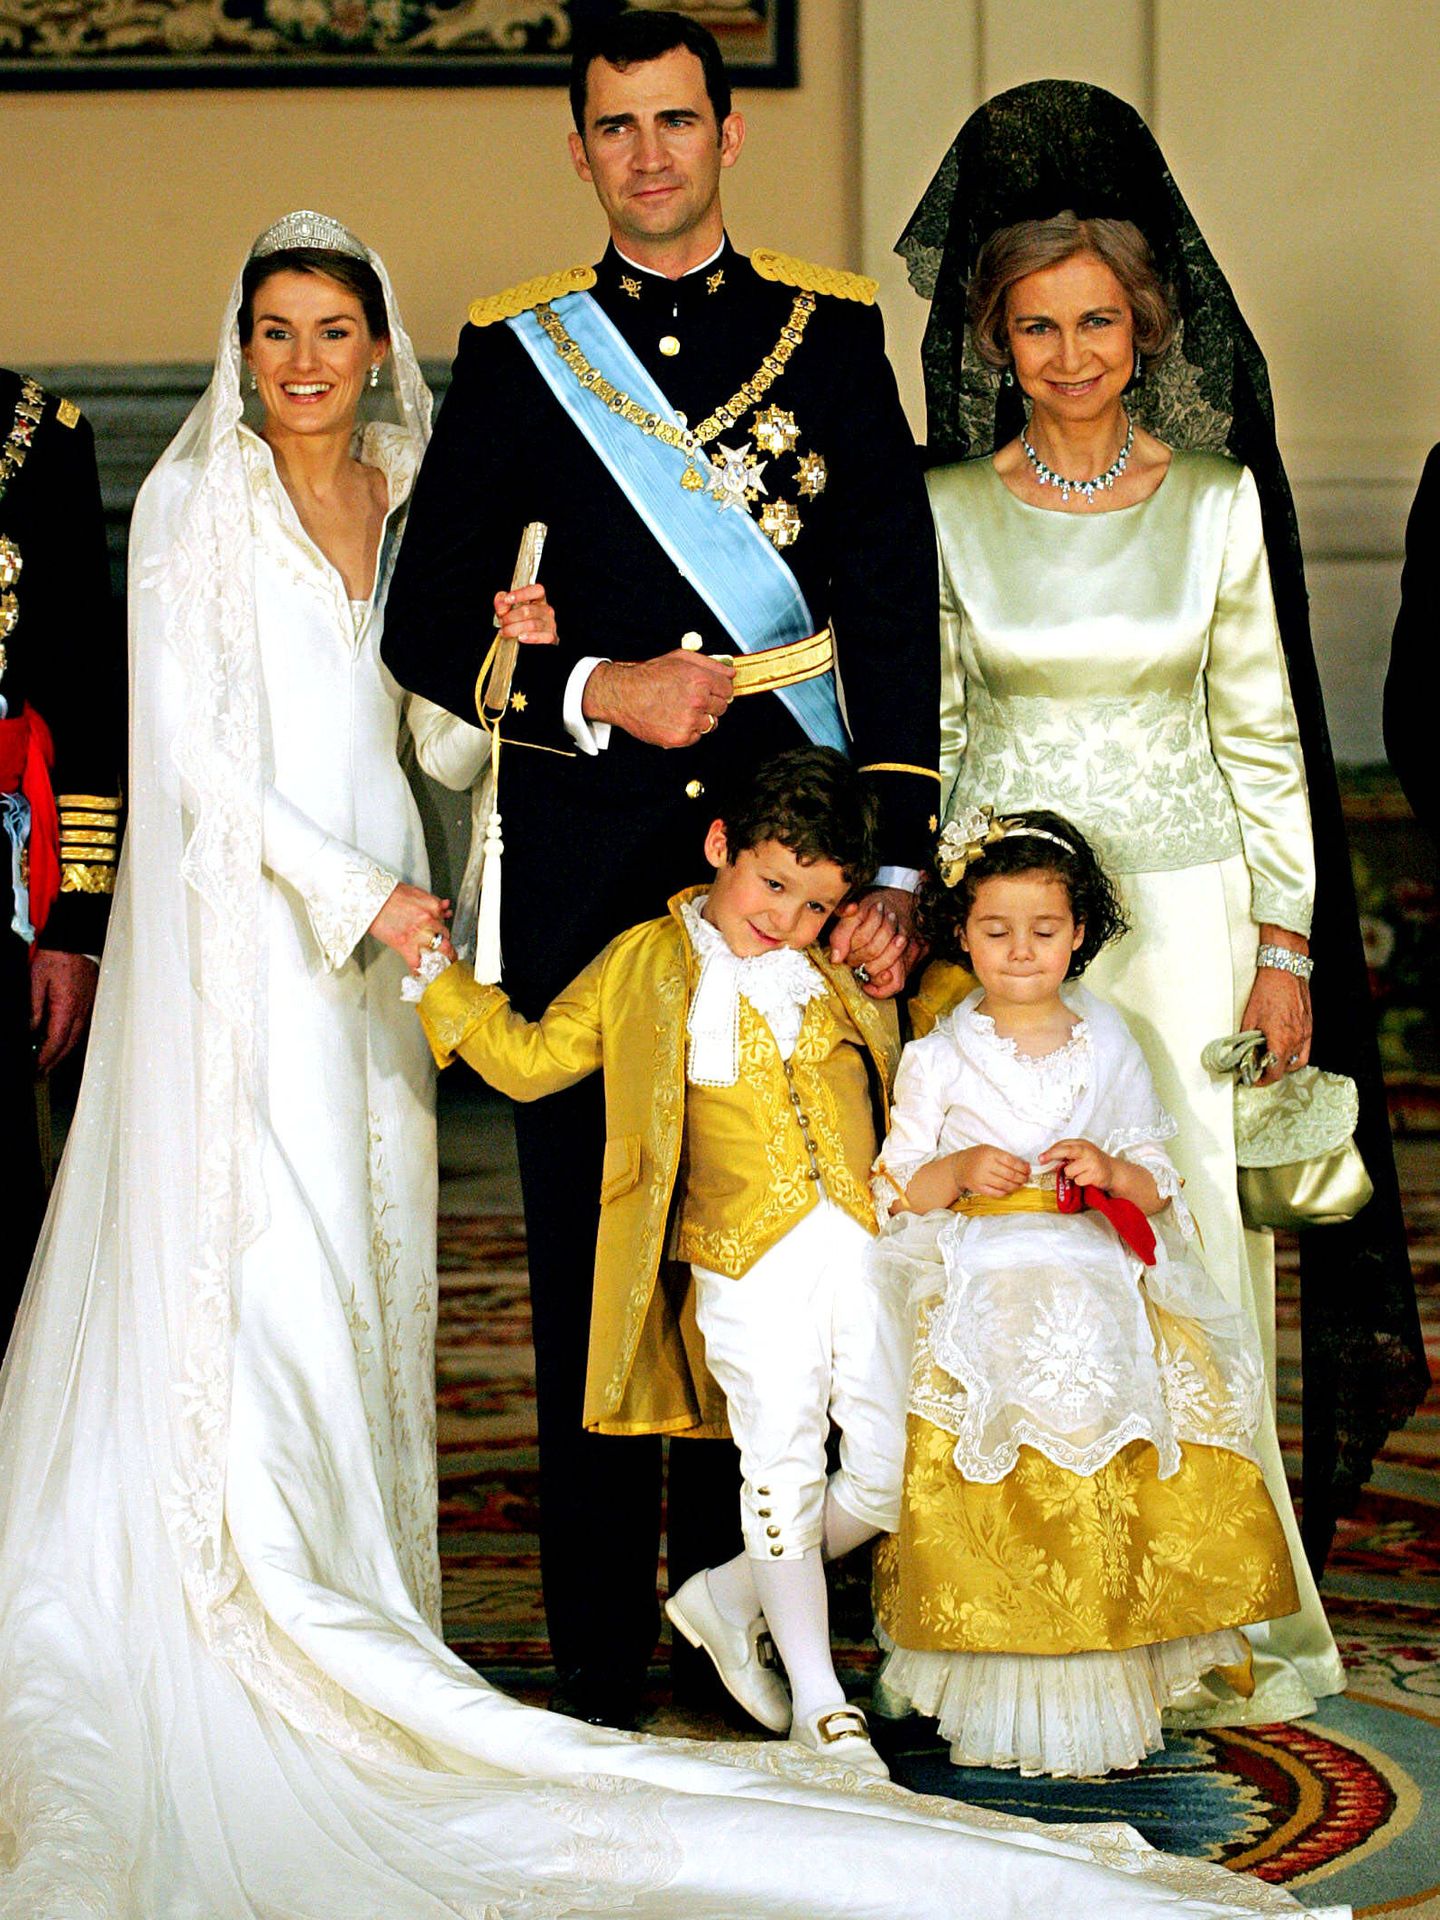 Retrato familiar de los reyes con Froilán y Victoria Federica, el día de su boda, el 22 de mayo de 2004, en la Almudena. (Pbeahuoipek)